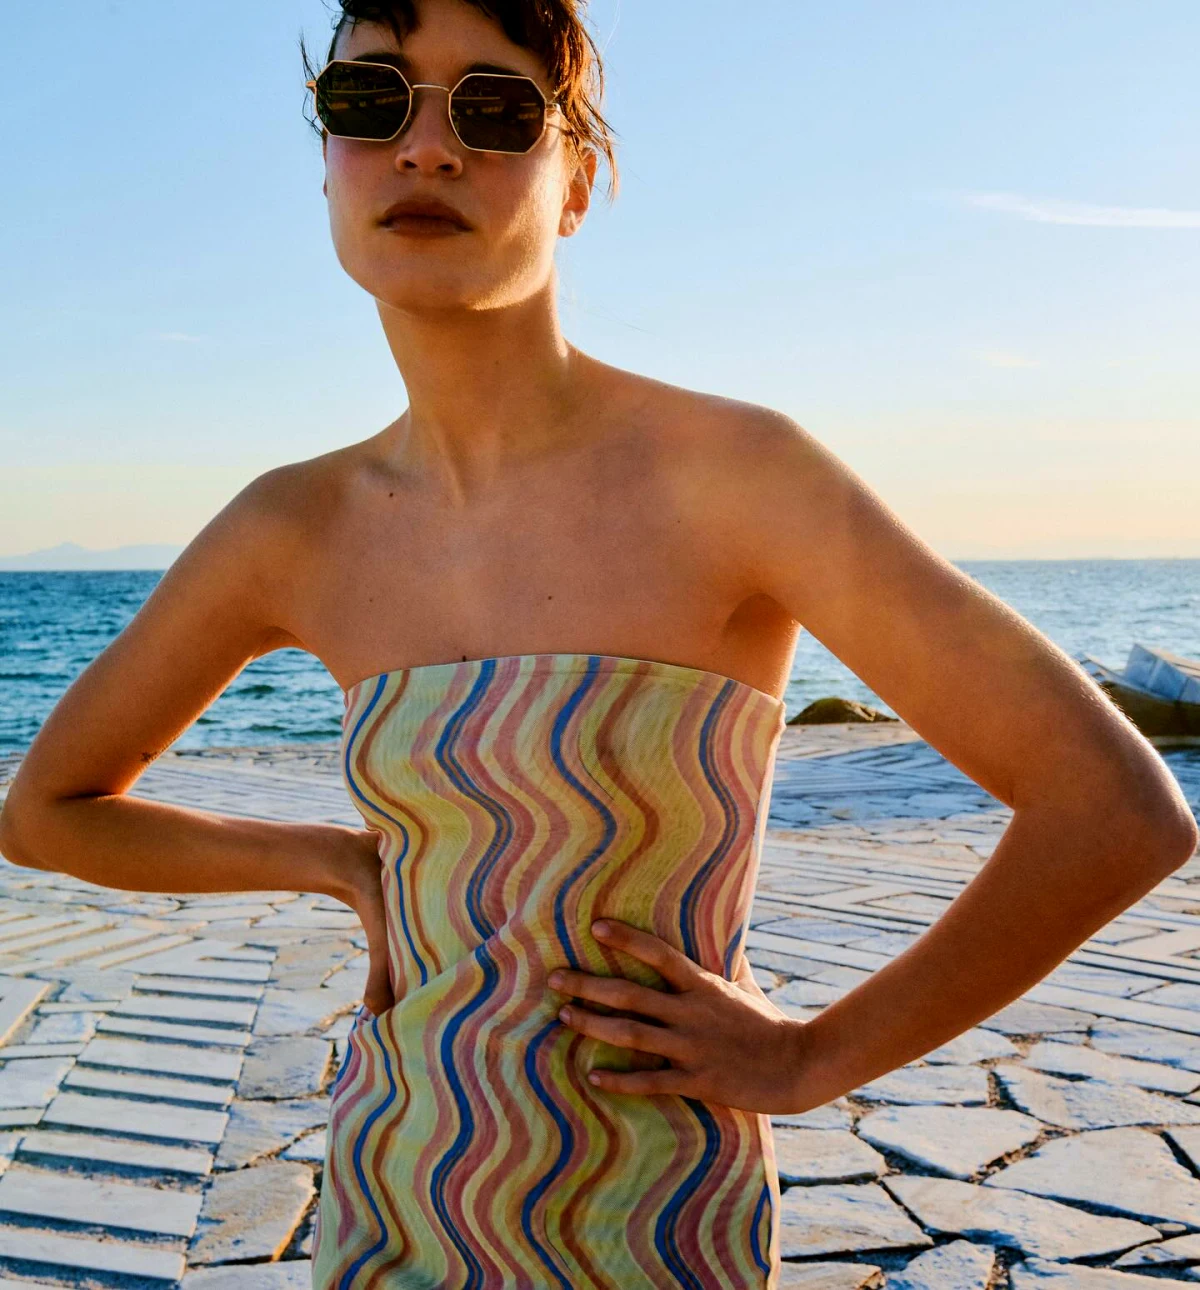 lunettes de soleil moderne pour visage carre femme a la plage